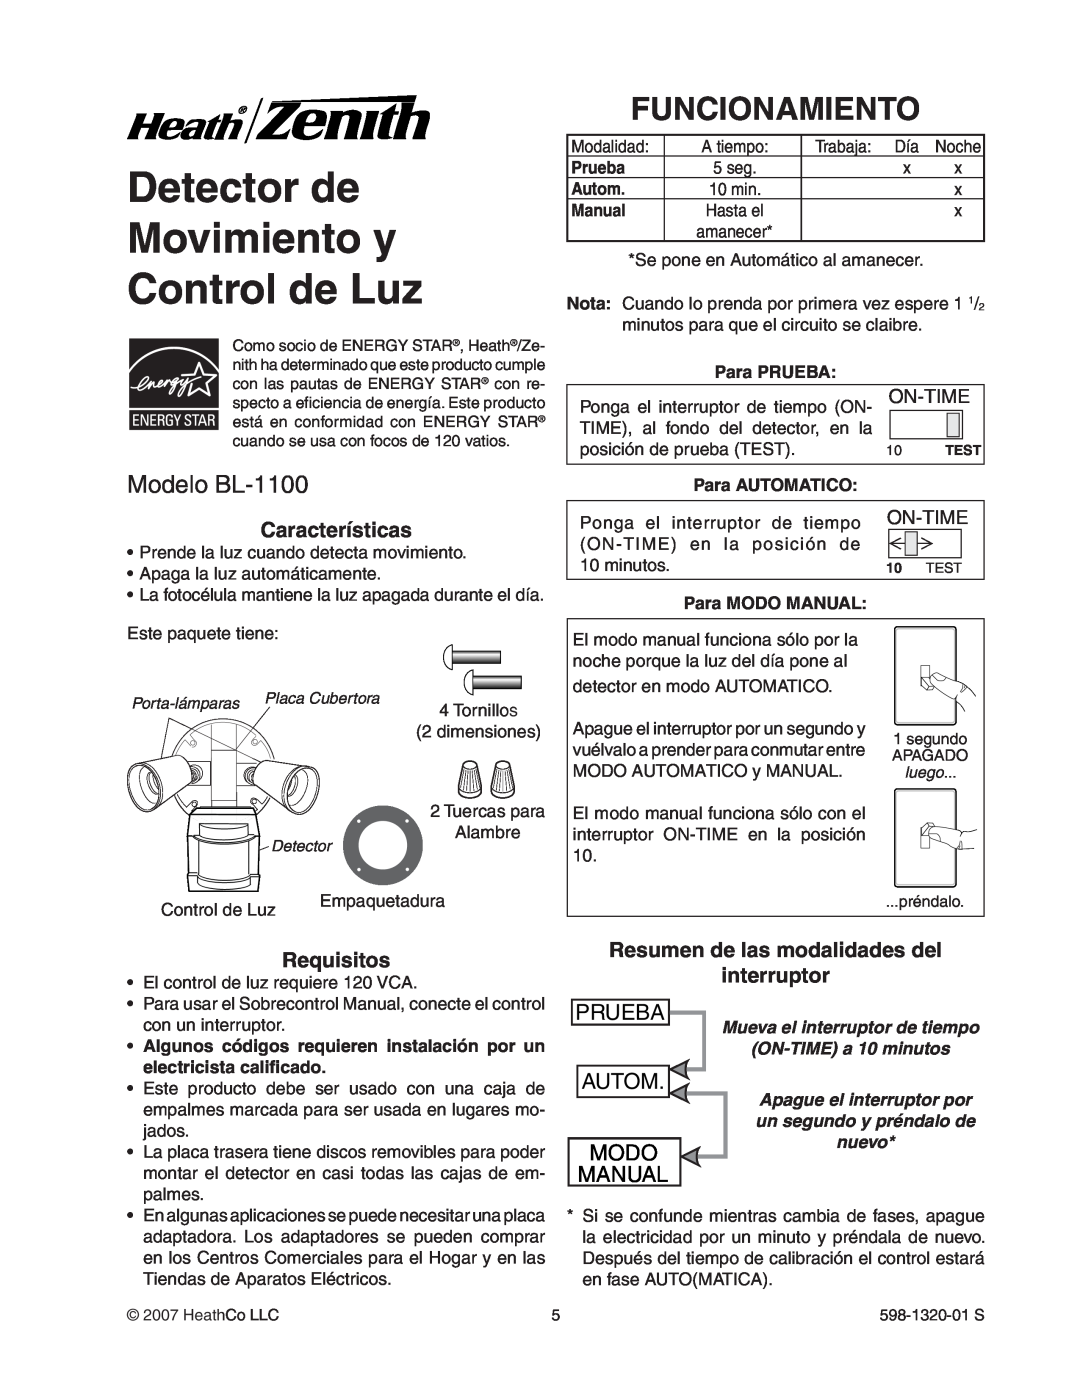 Heath Zenith Detector de Movimiento y Control de Luz, Funcionamiento, Modelo BL-1100, Características, Requisitos, Modo 